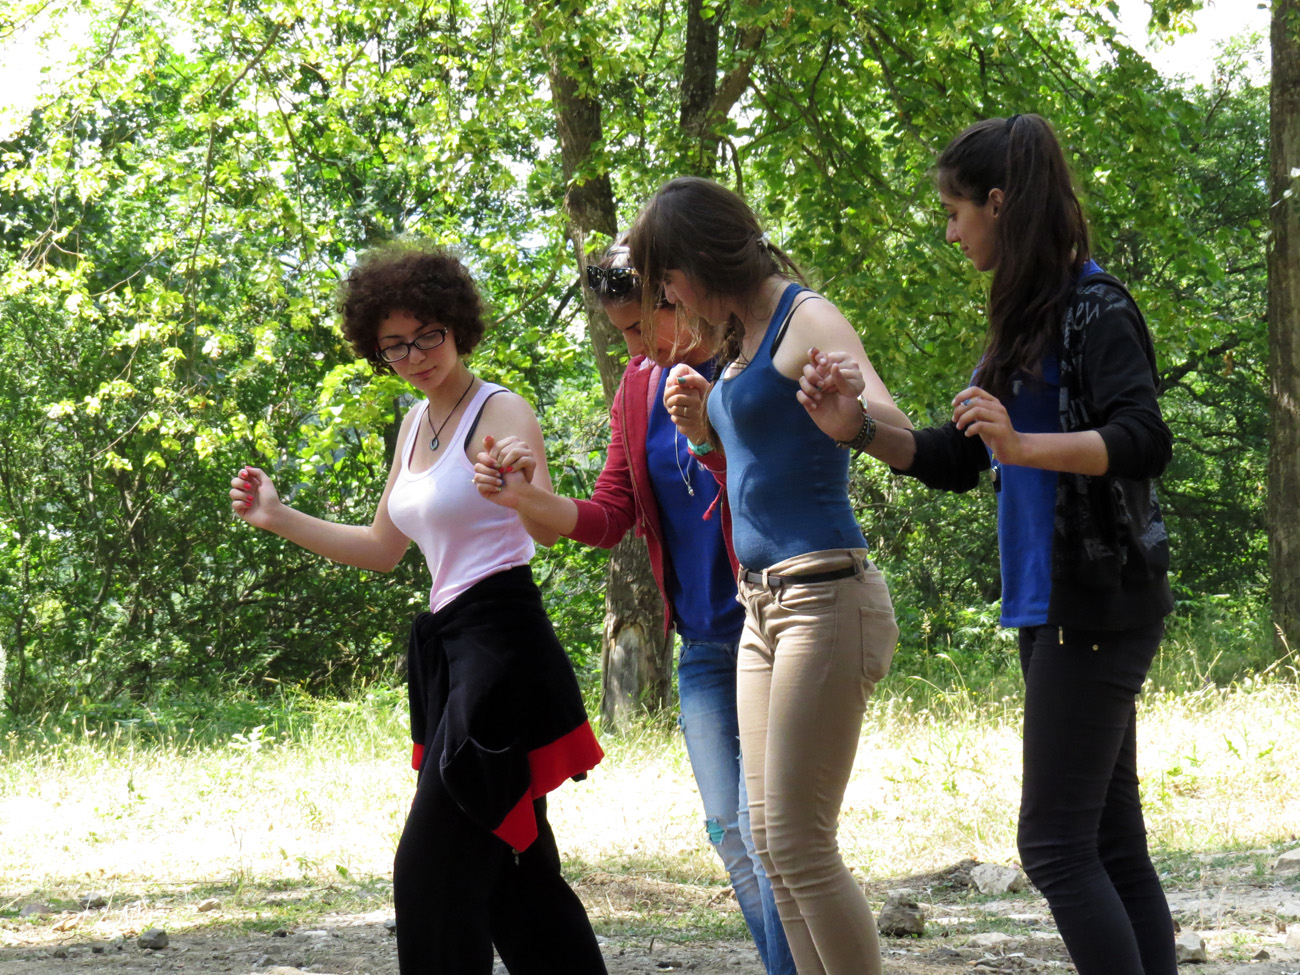 Вожатая Илонка, крайняя слева, учит правильно танцевать народный армянский танец.